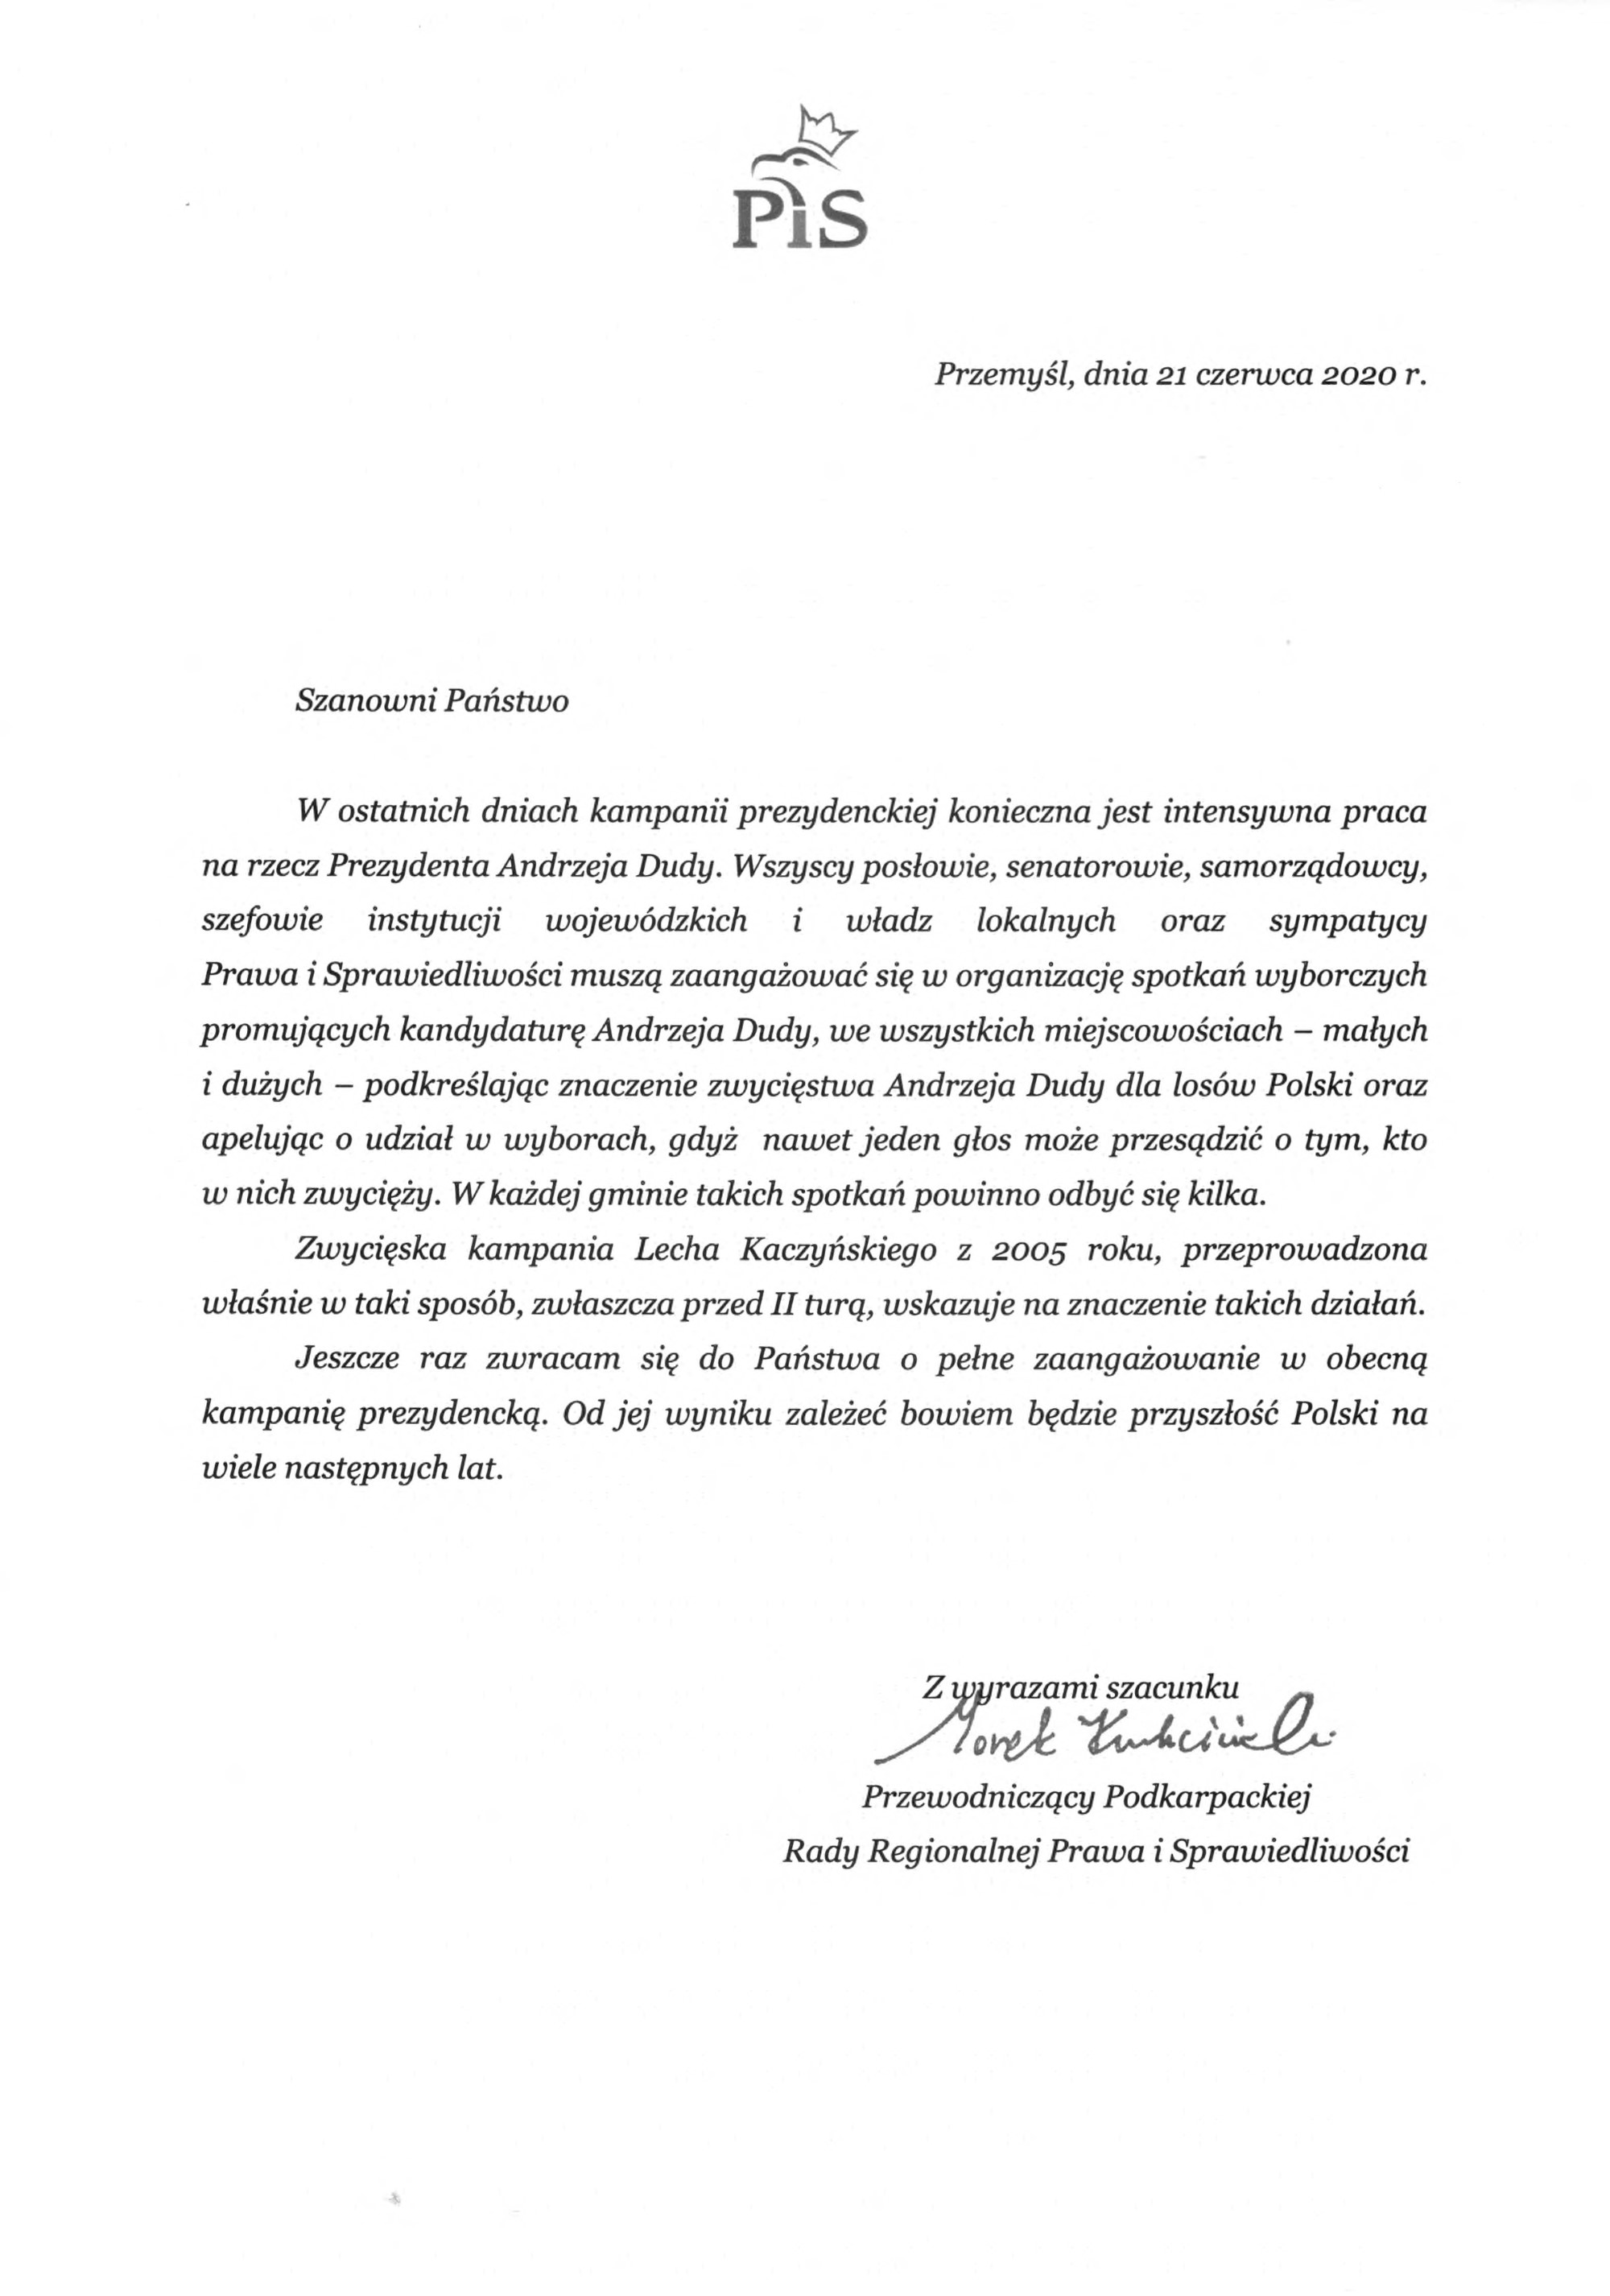 List Przewodniczący Podkarpackiej Rady Regionalnej Prawa i Sprawiedliwości 1